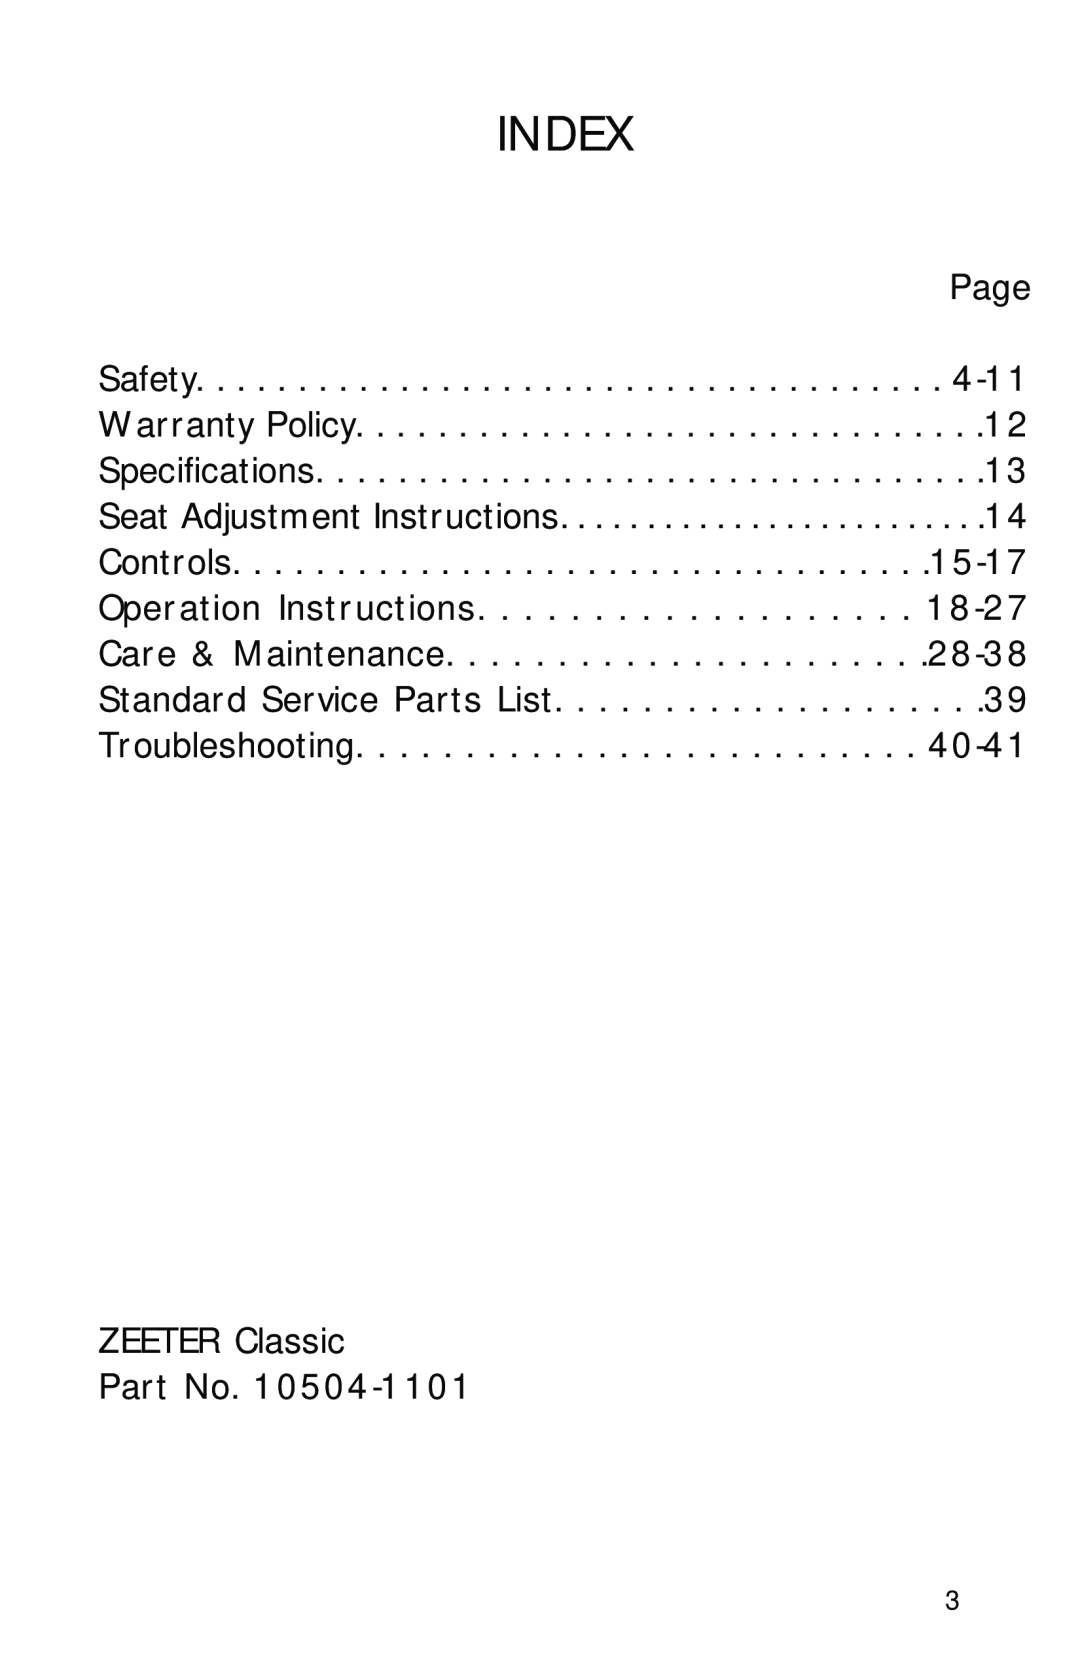 Dixon ZTR 2002 manual Index 